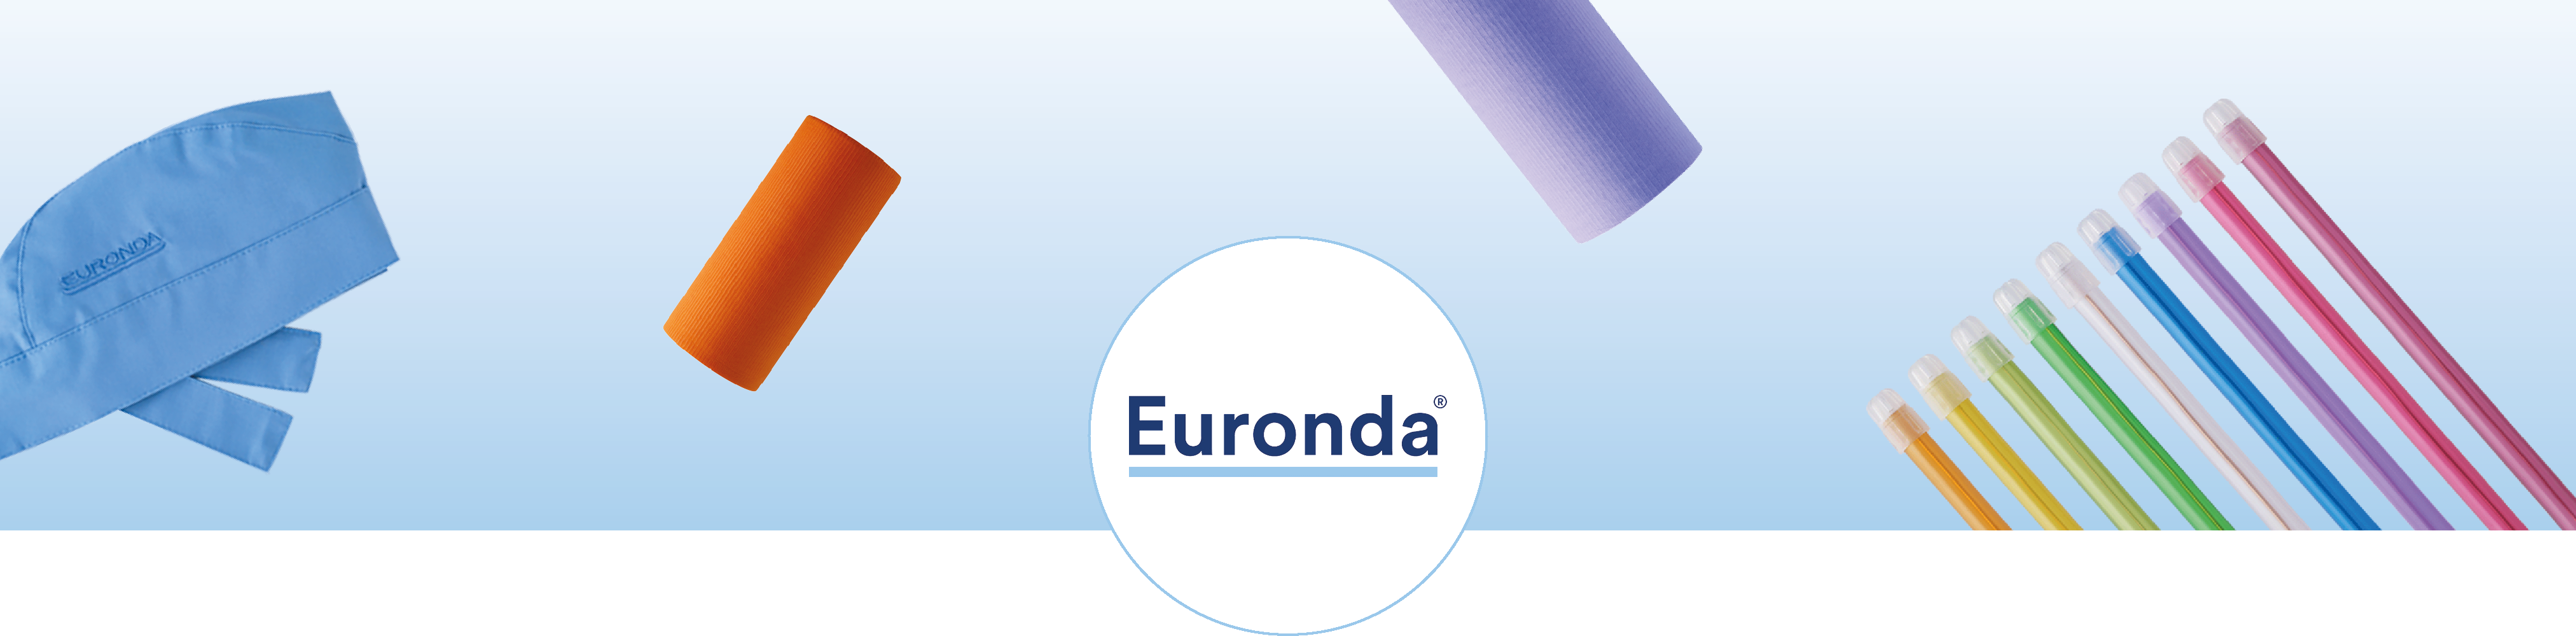 banner_euronda